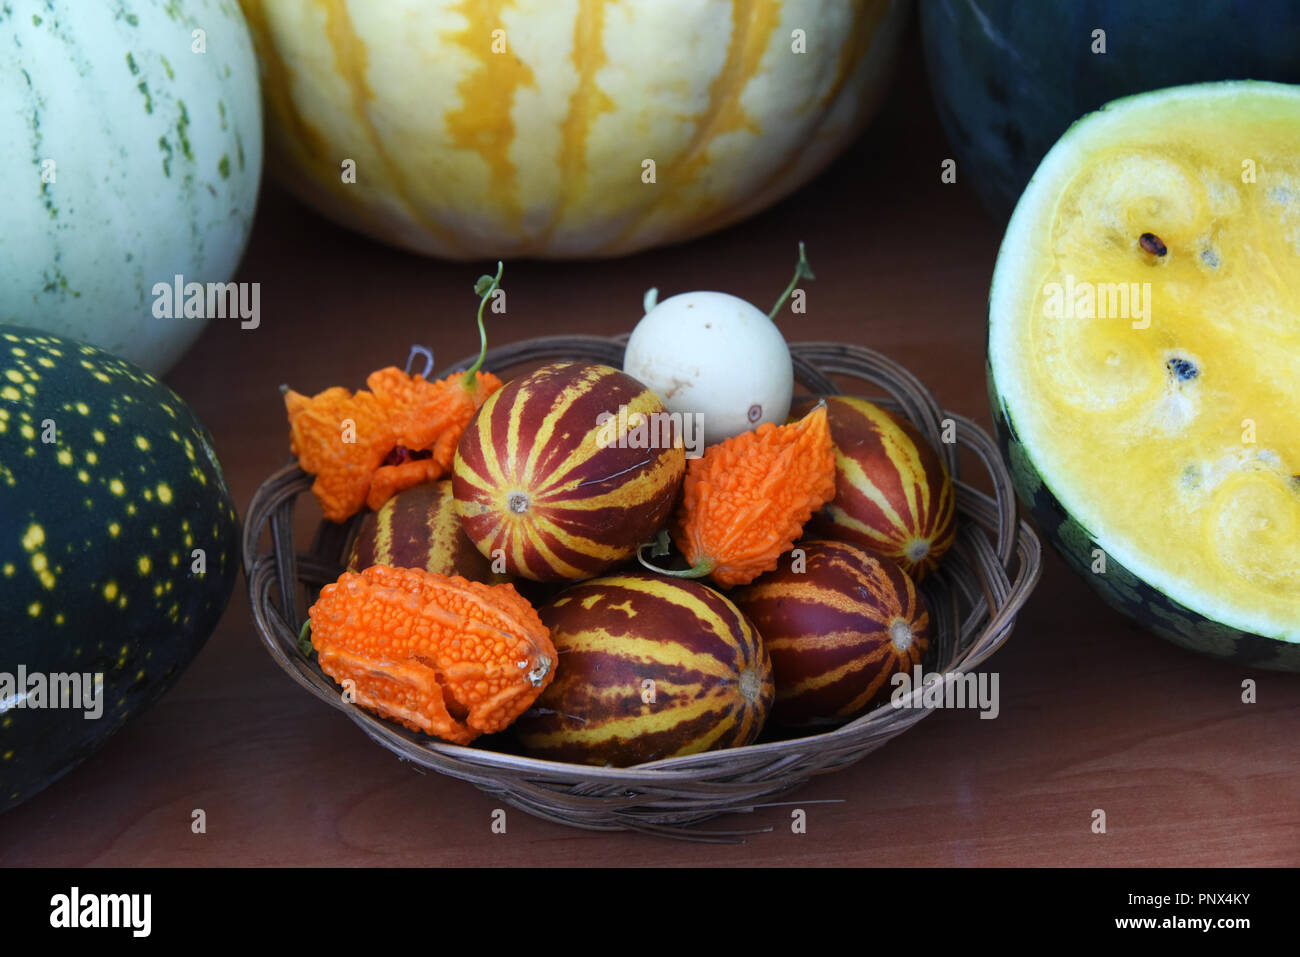 Melonen und Kürbissen - Zusammensetzung der verschiedenen Sorten Kürbisse, Melonen und Wassermelonen. Stockfoto